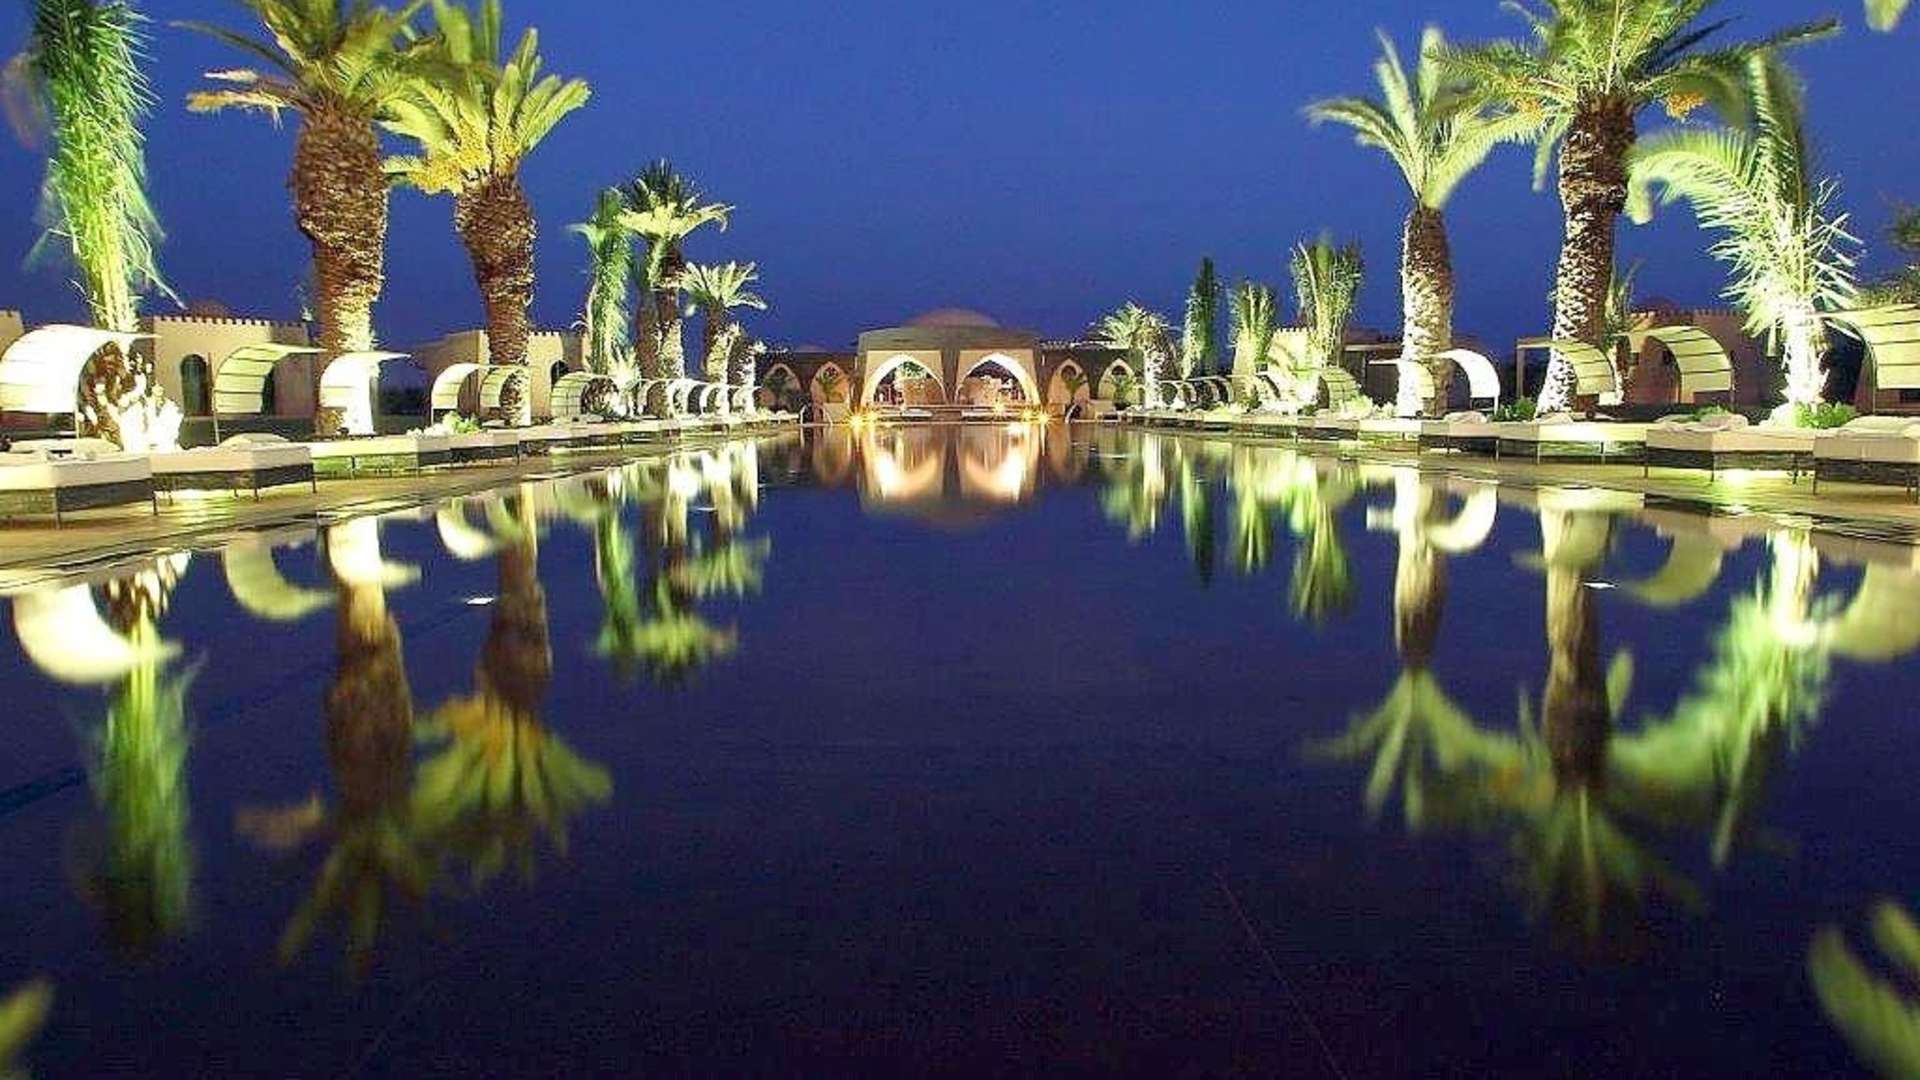 Location de vacances,Villa,Magnifique maison d'hôtes de 8 suites sur la route de l'Ourika avec services hôteliers,Marrakech,Route de l'Ourika